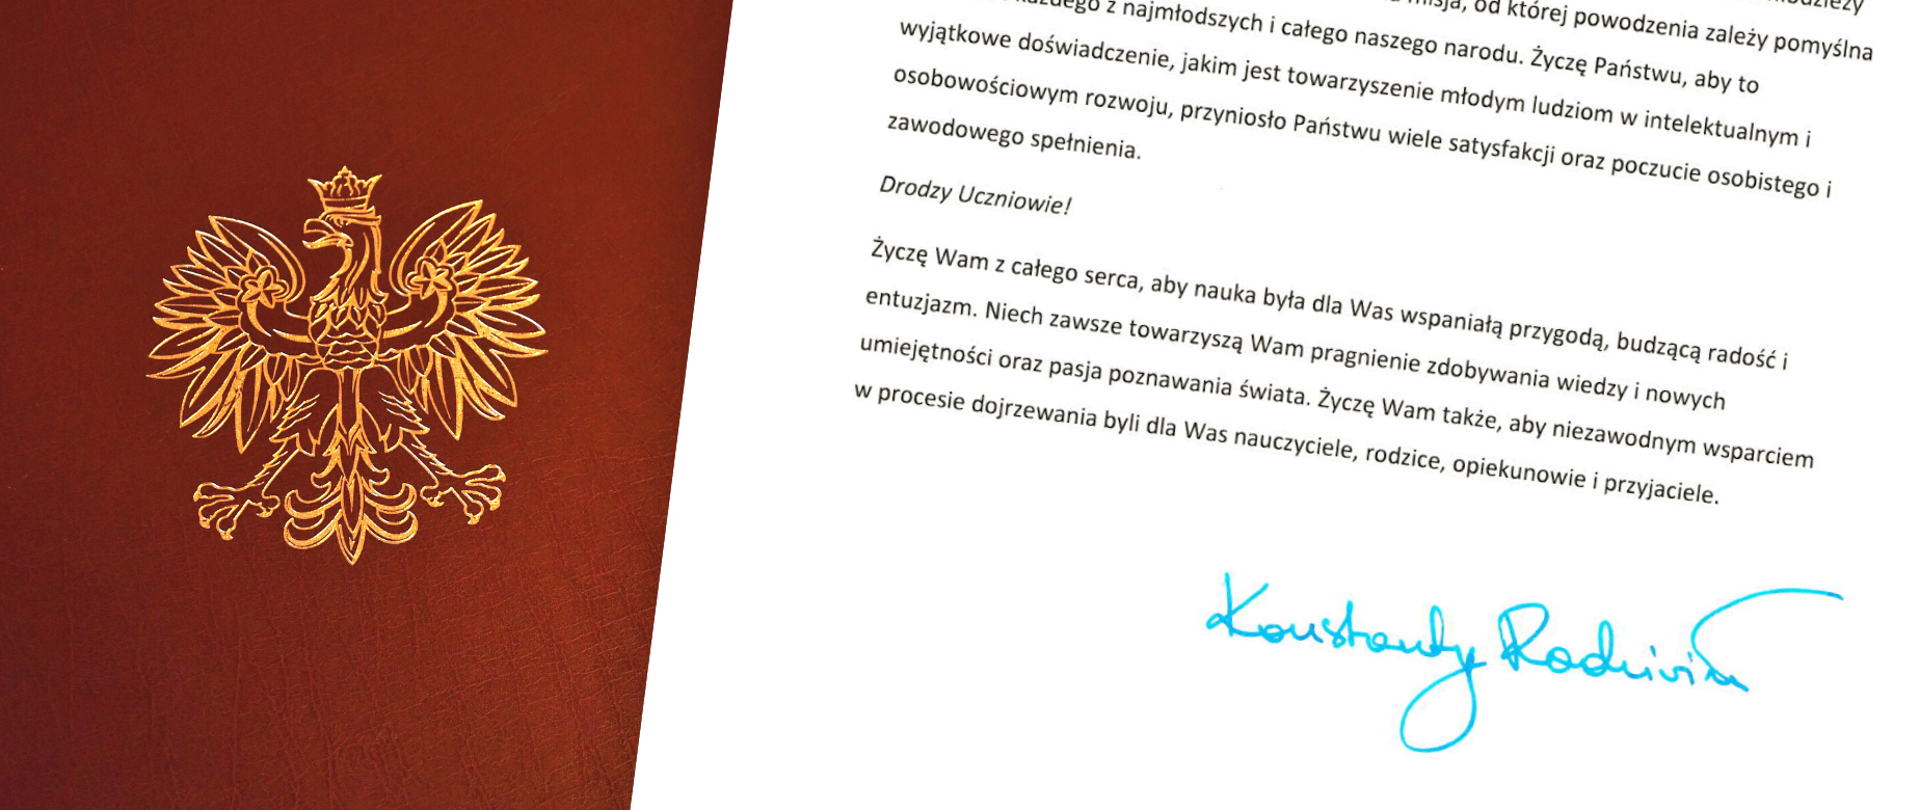 list z życzeniami z podpisem Wojewody na brązowej teczce ze złotym godłem Polski